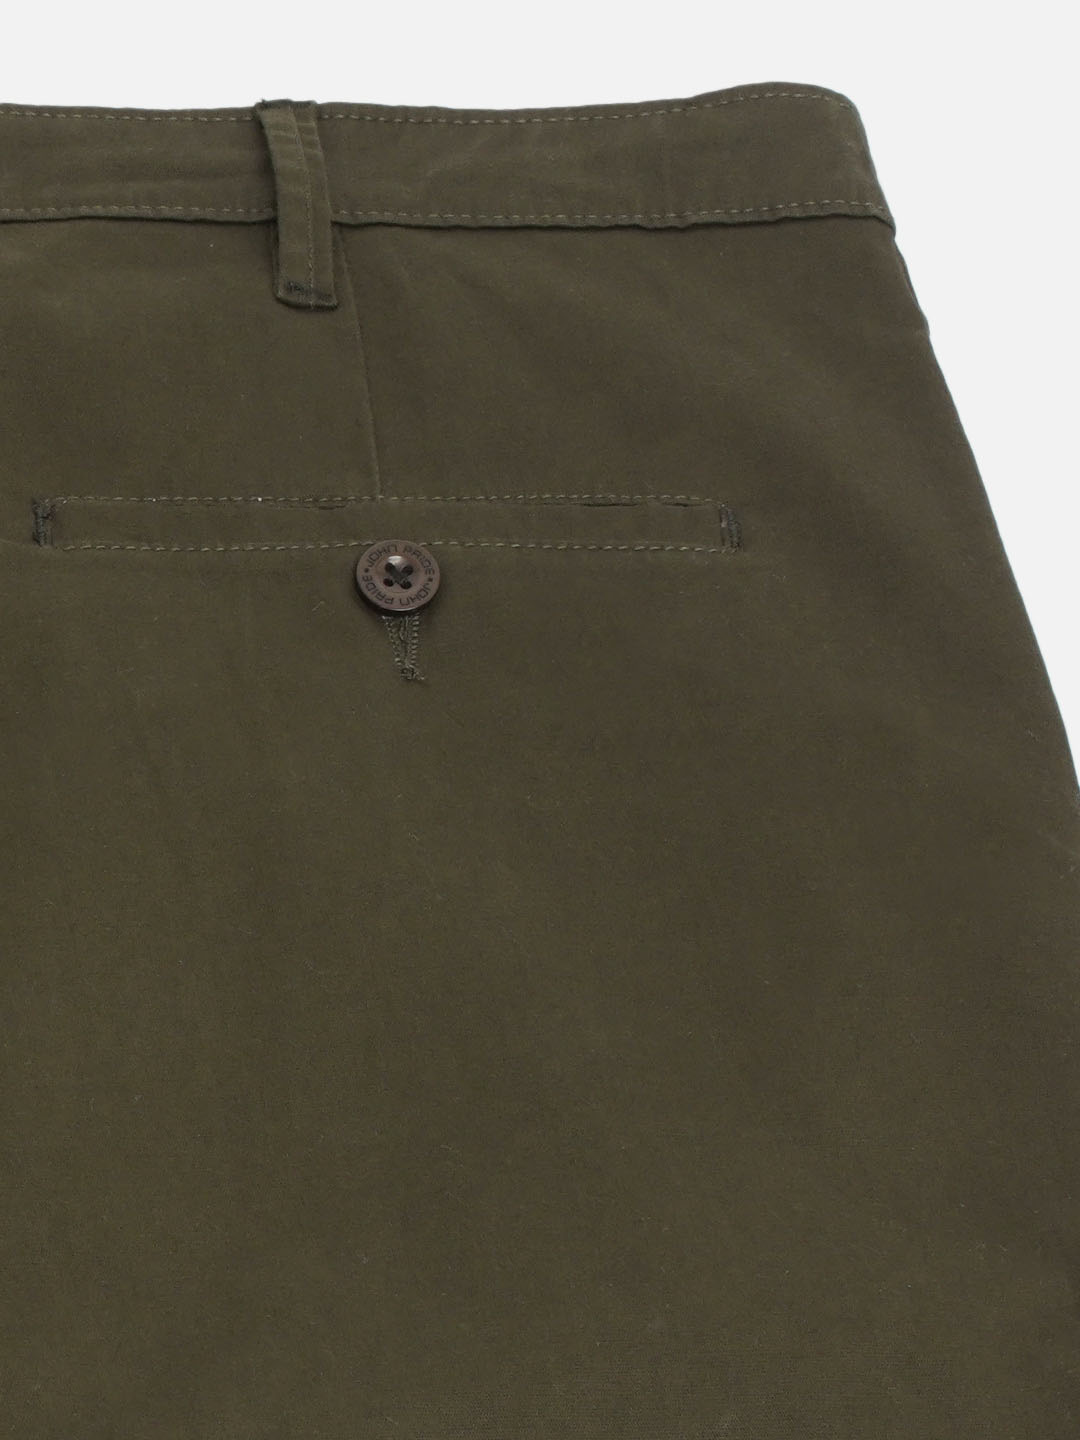 bottomwear/trousers/JPTR2190/jptr2190-2.jpg